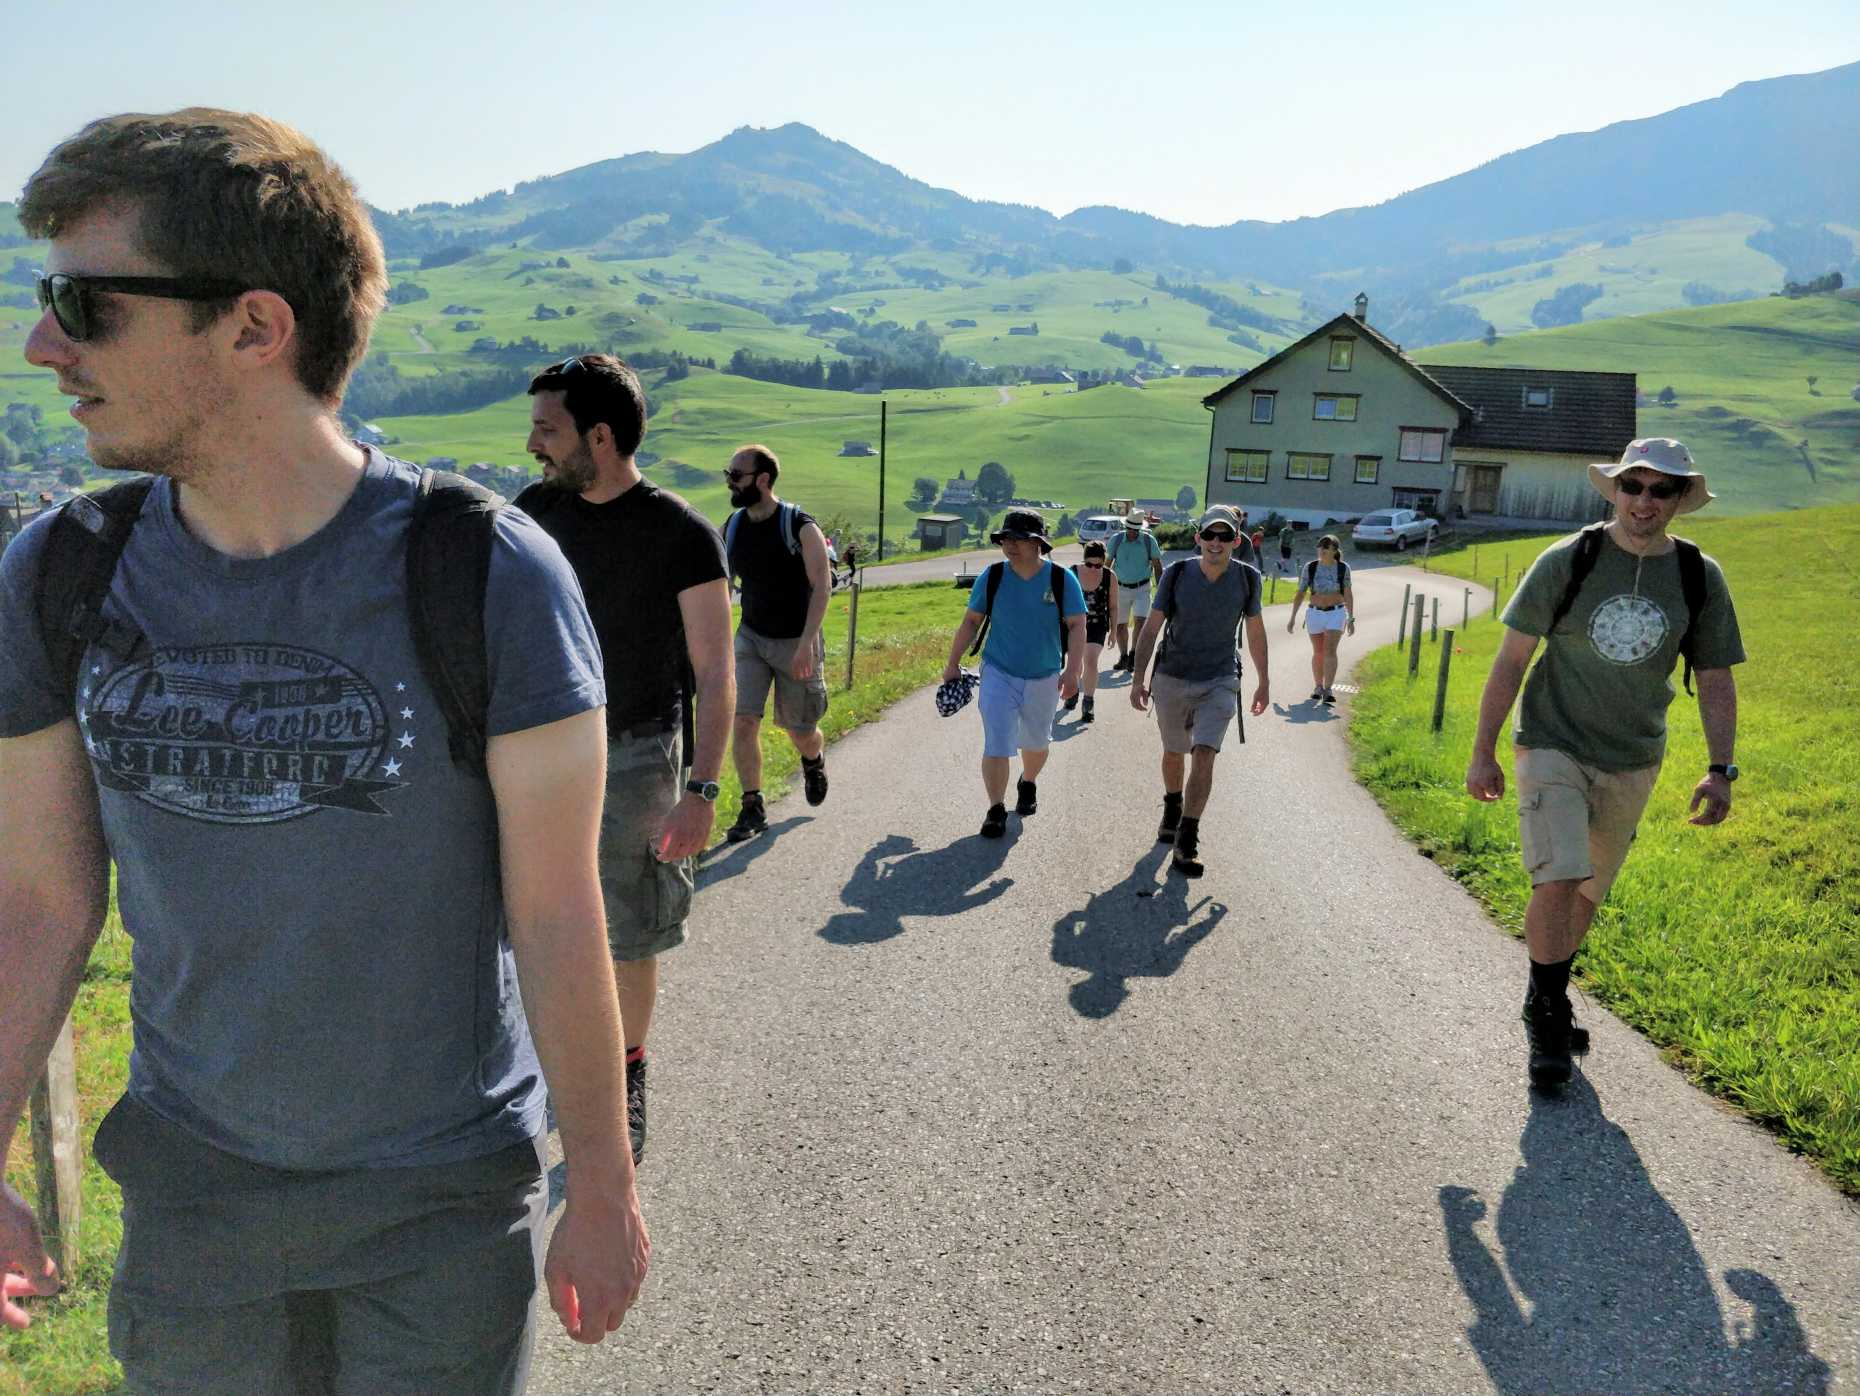 Enlarged view: Group hiking @ Schwende 2017